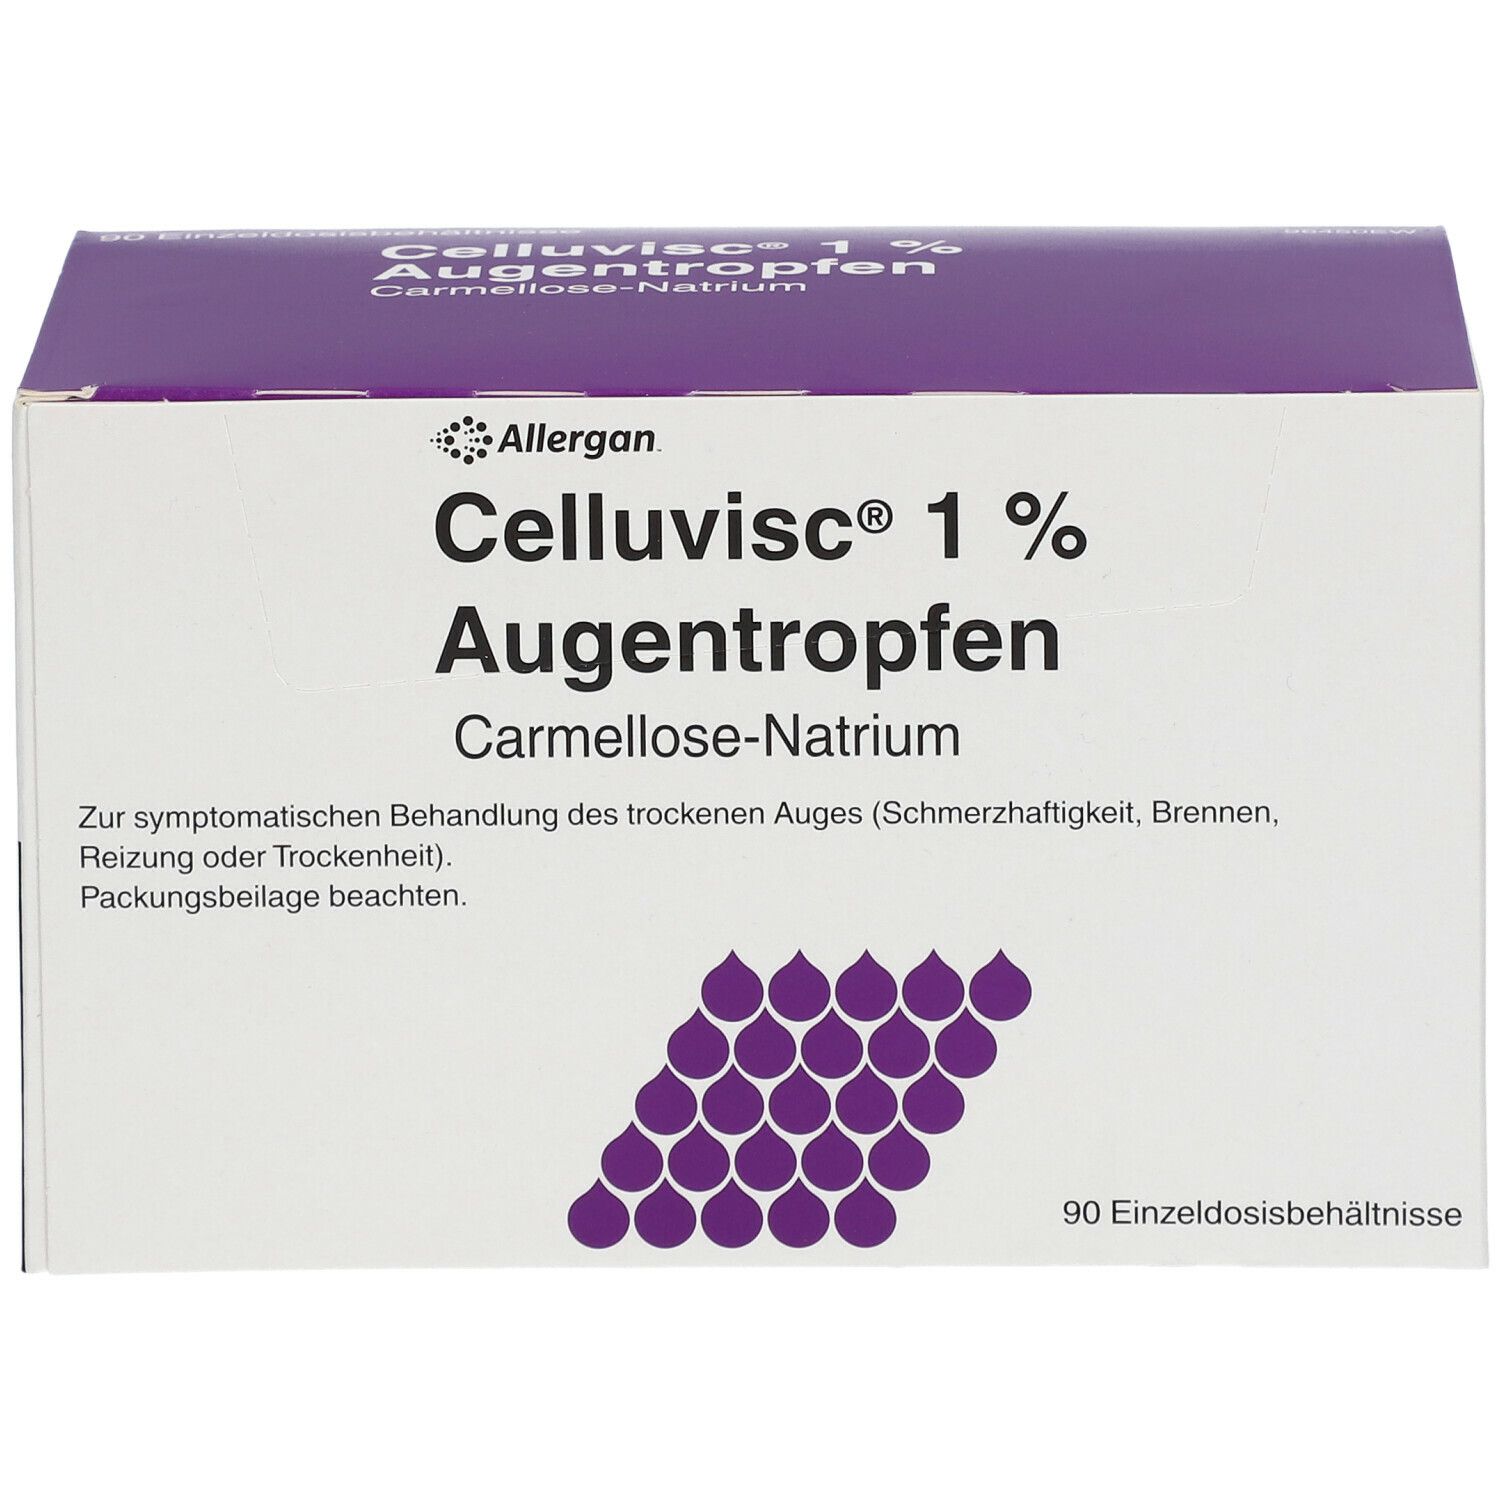 Celluvisc® 1% Augentropfen